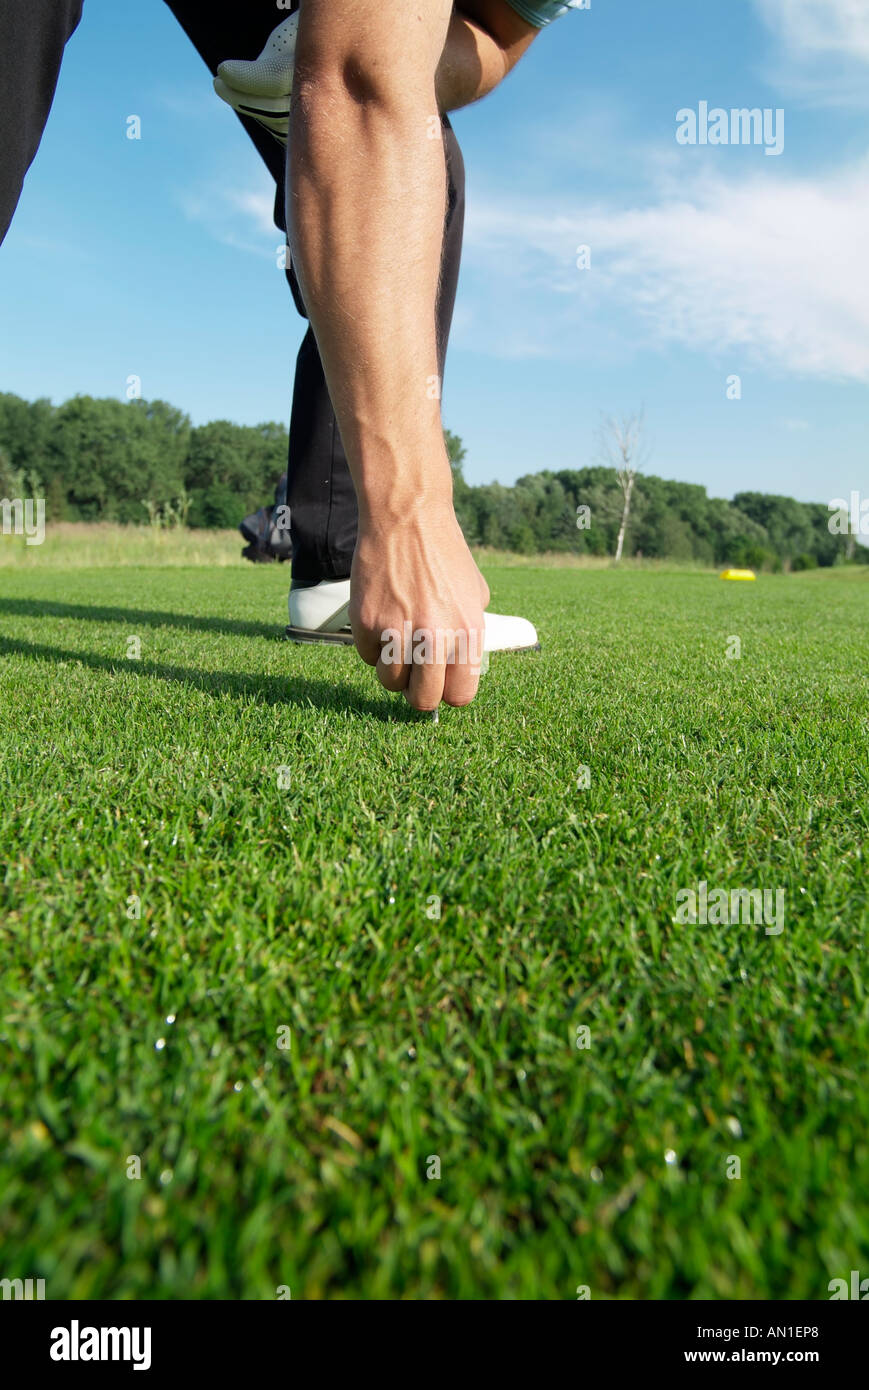 Golf Golf Golf, détail d'un tertre de golfeur sur sa balle de golf Banque D'Images